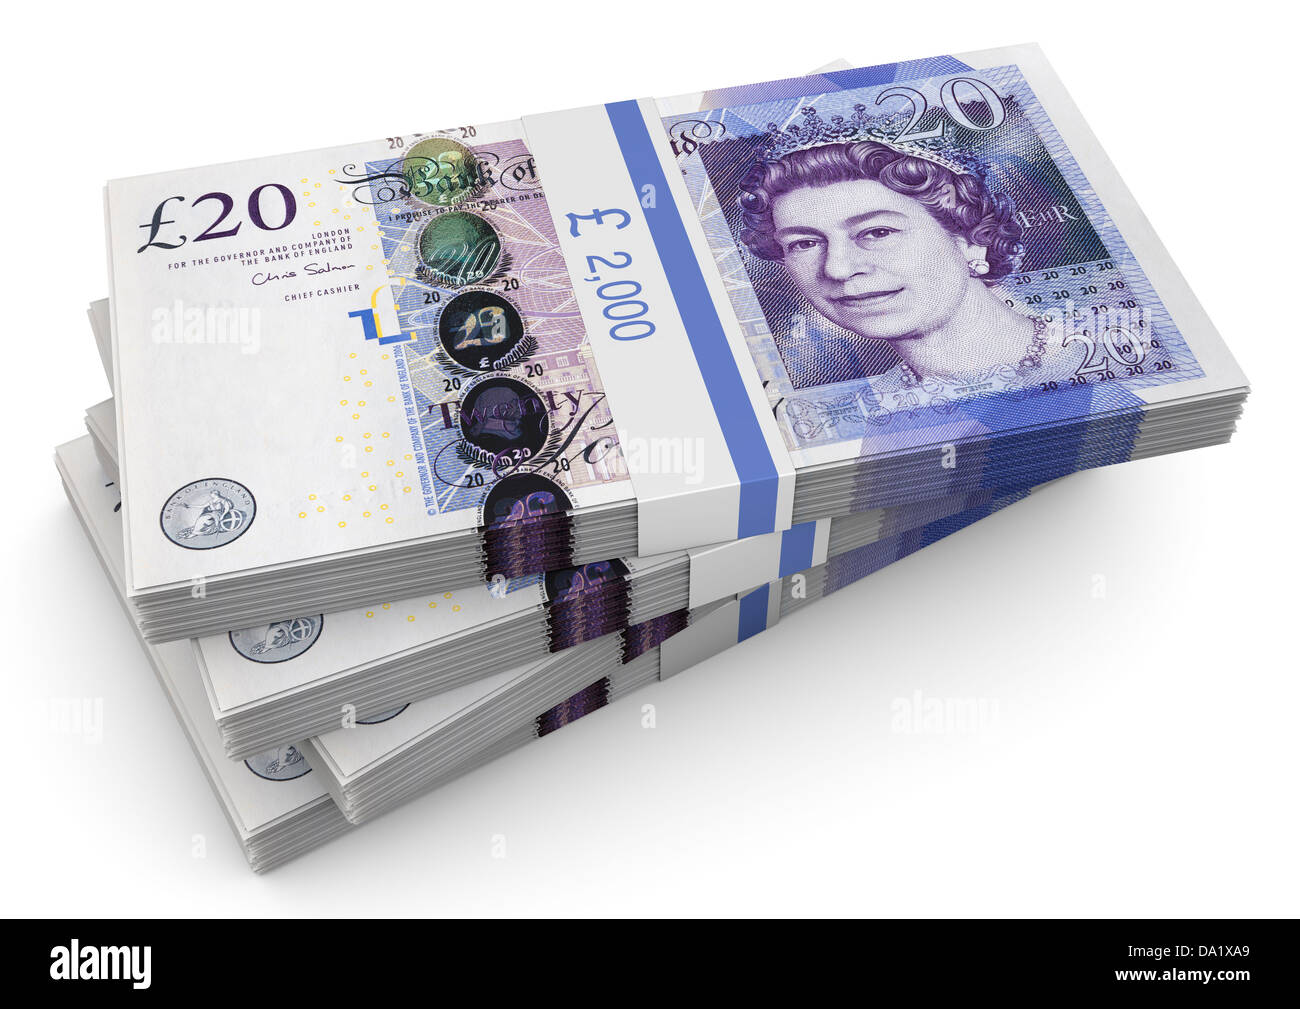 Geld Stapel britisches Pfund £20 Pfund Noten. Konzept. weißer Hintergrund Stockfoto